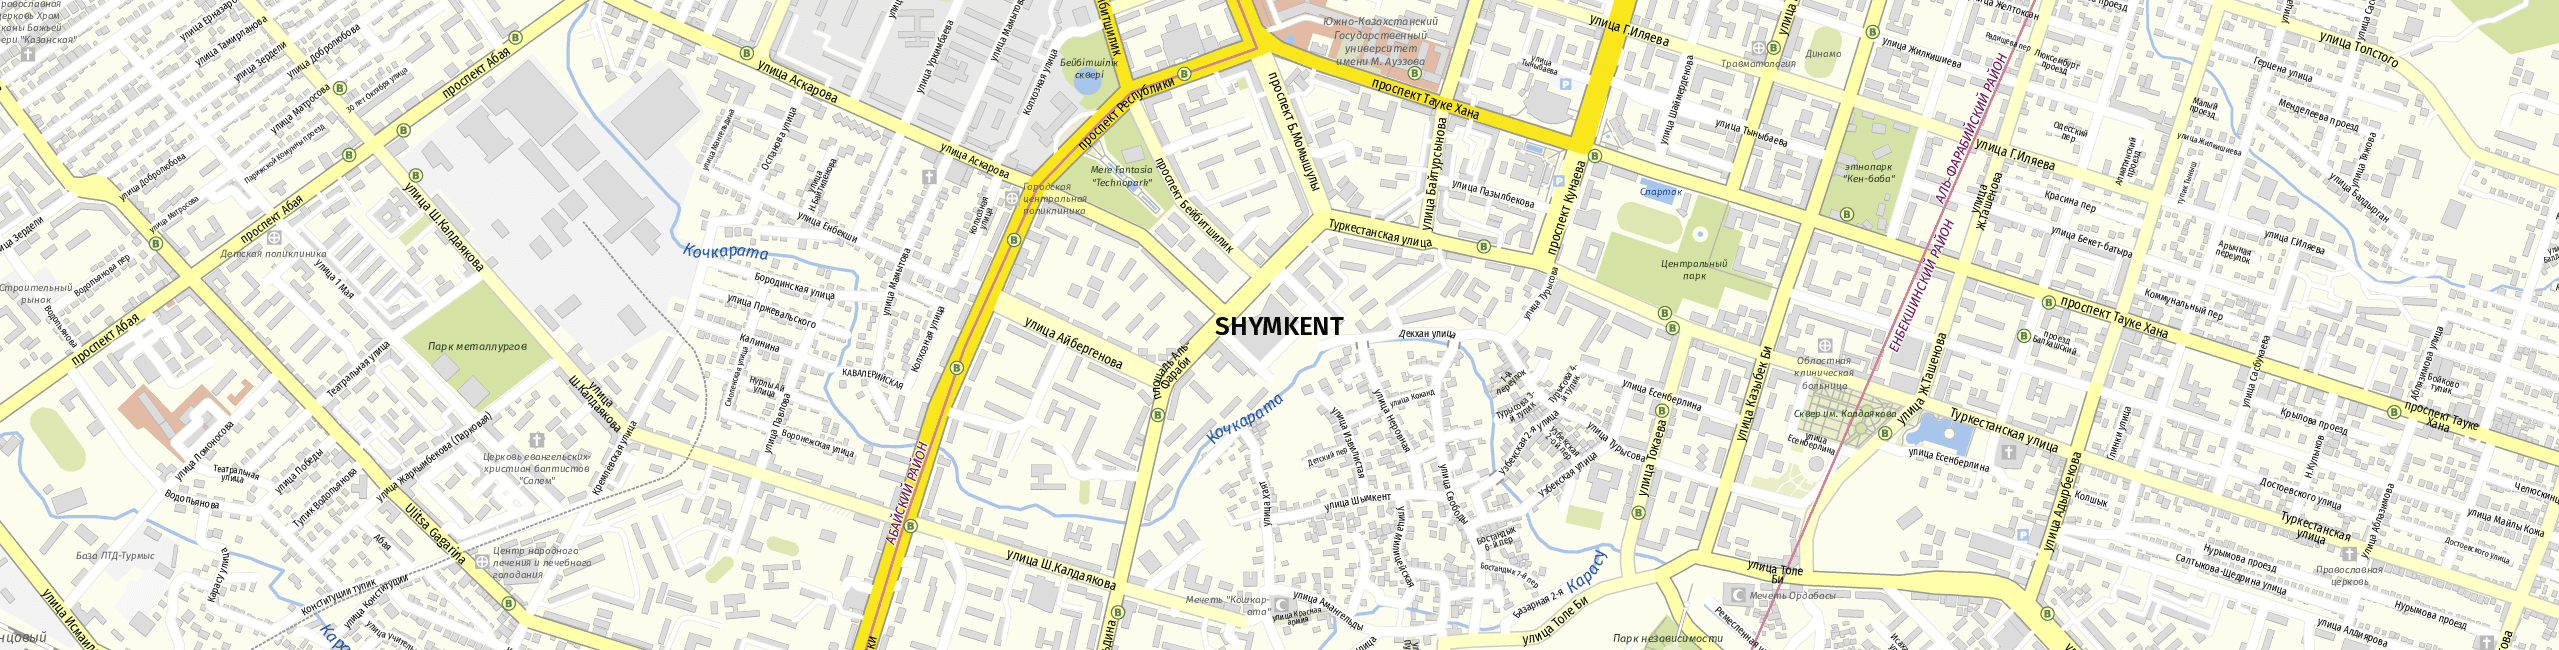 Stadtplan Schymkent zum Downloaden.